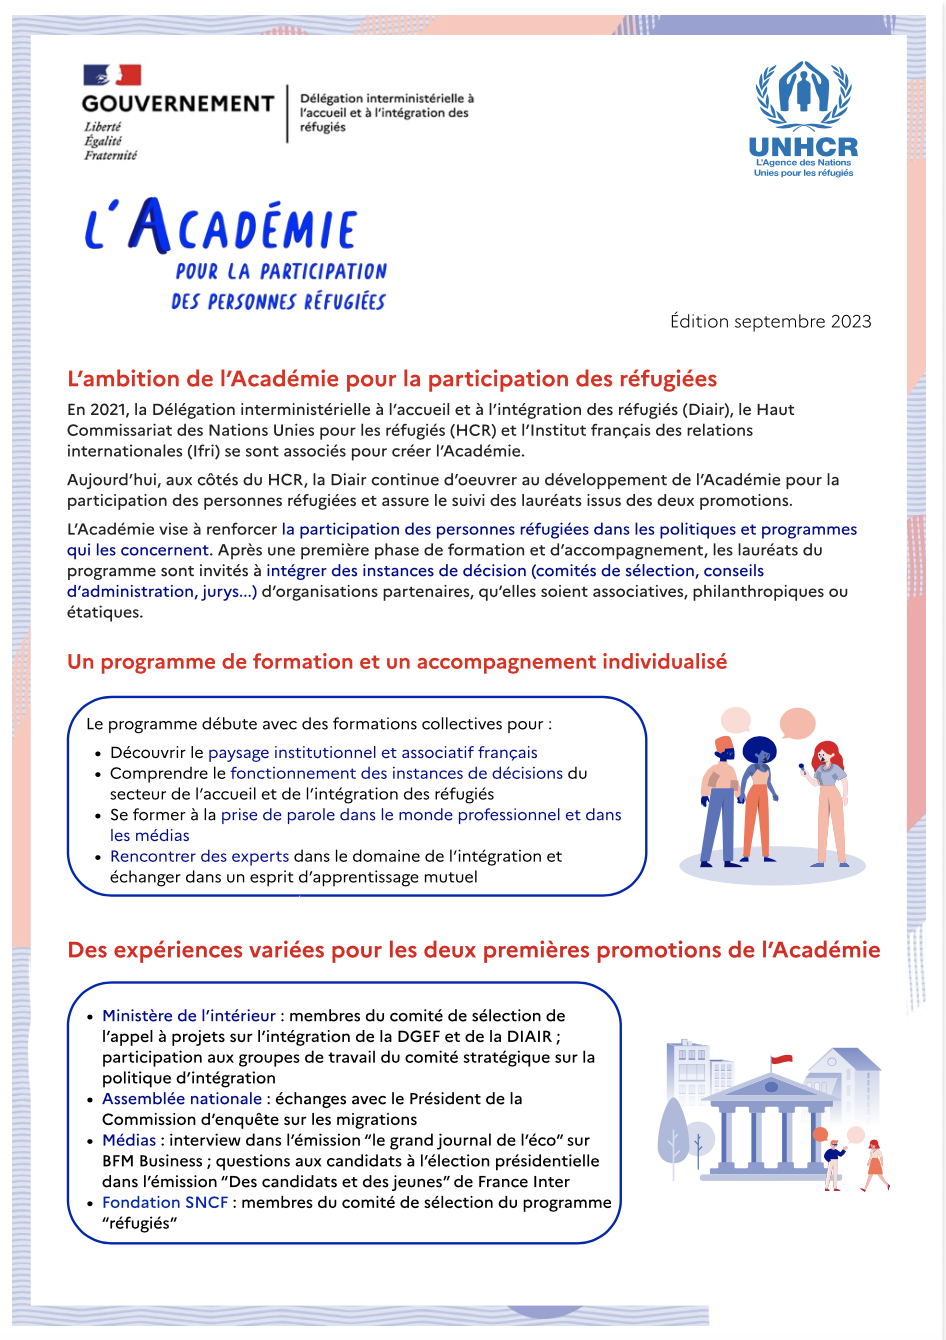 Plaquette de présentation de l’Académie pour la participation des personnes réfugiées